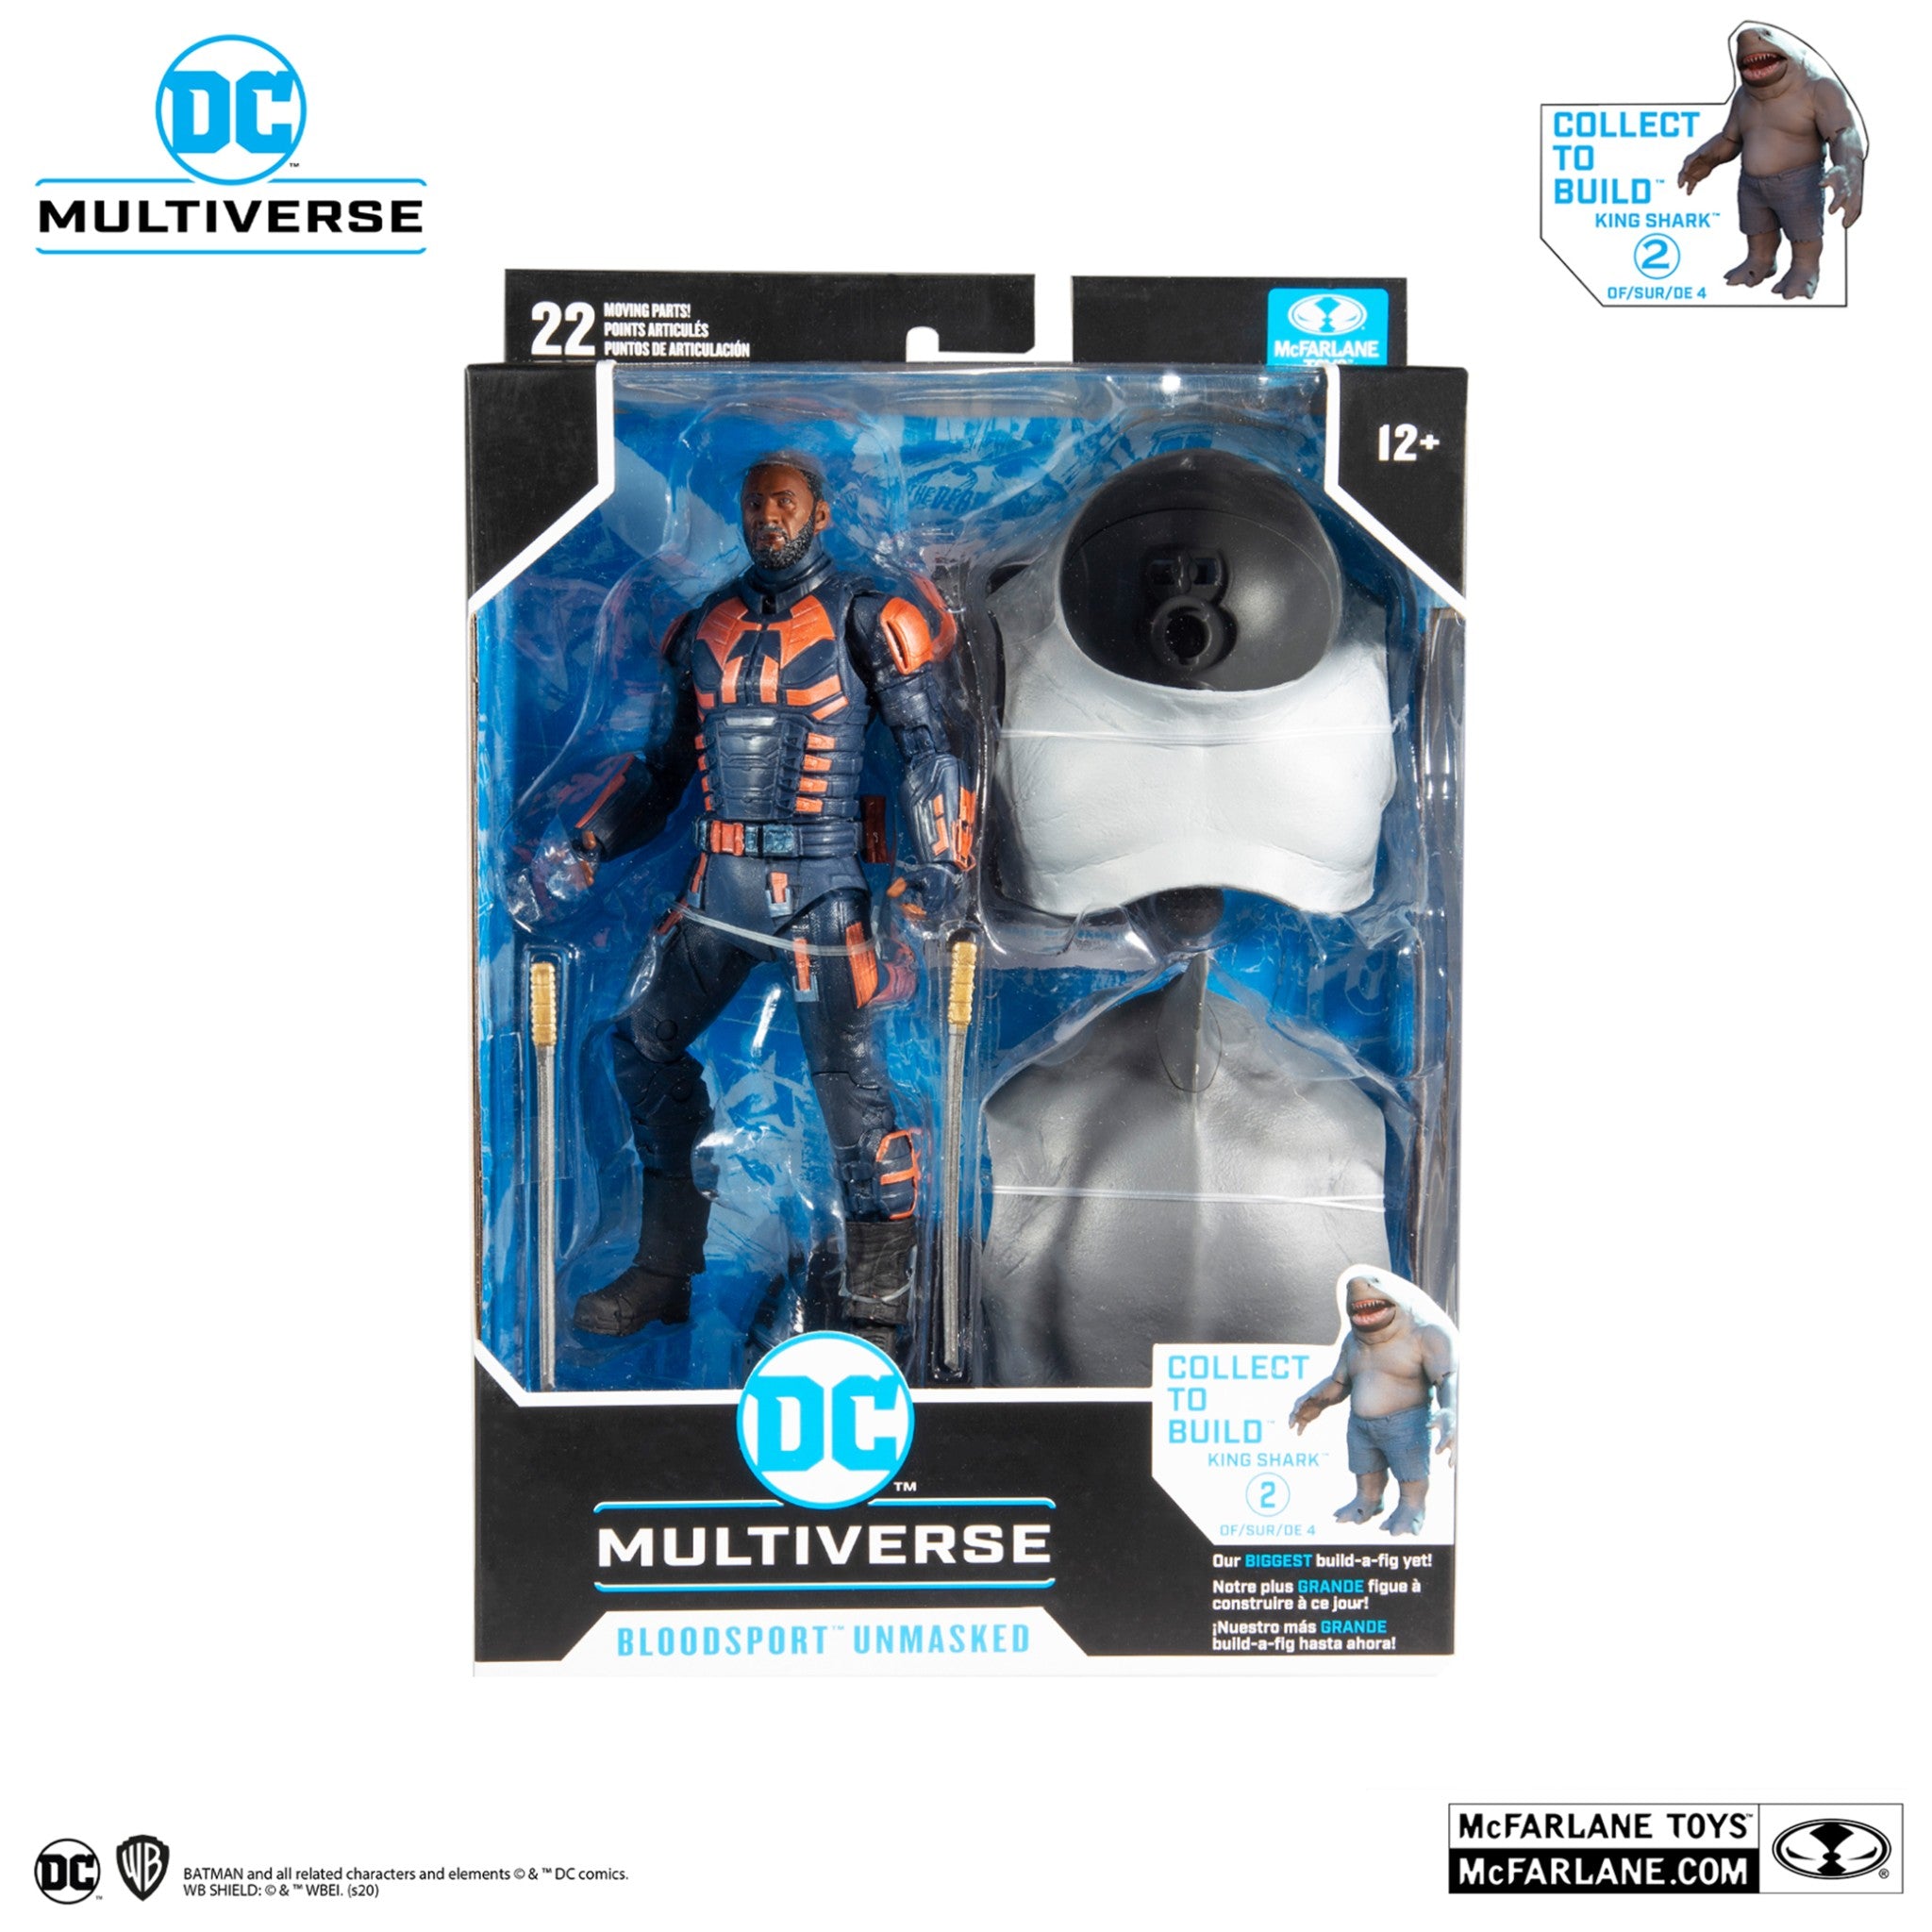 DC Multiverse Suicide Squad Bloodsport Unmasked BAF King Shark - McFarlane Toys-1